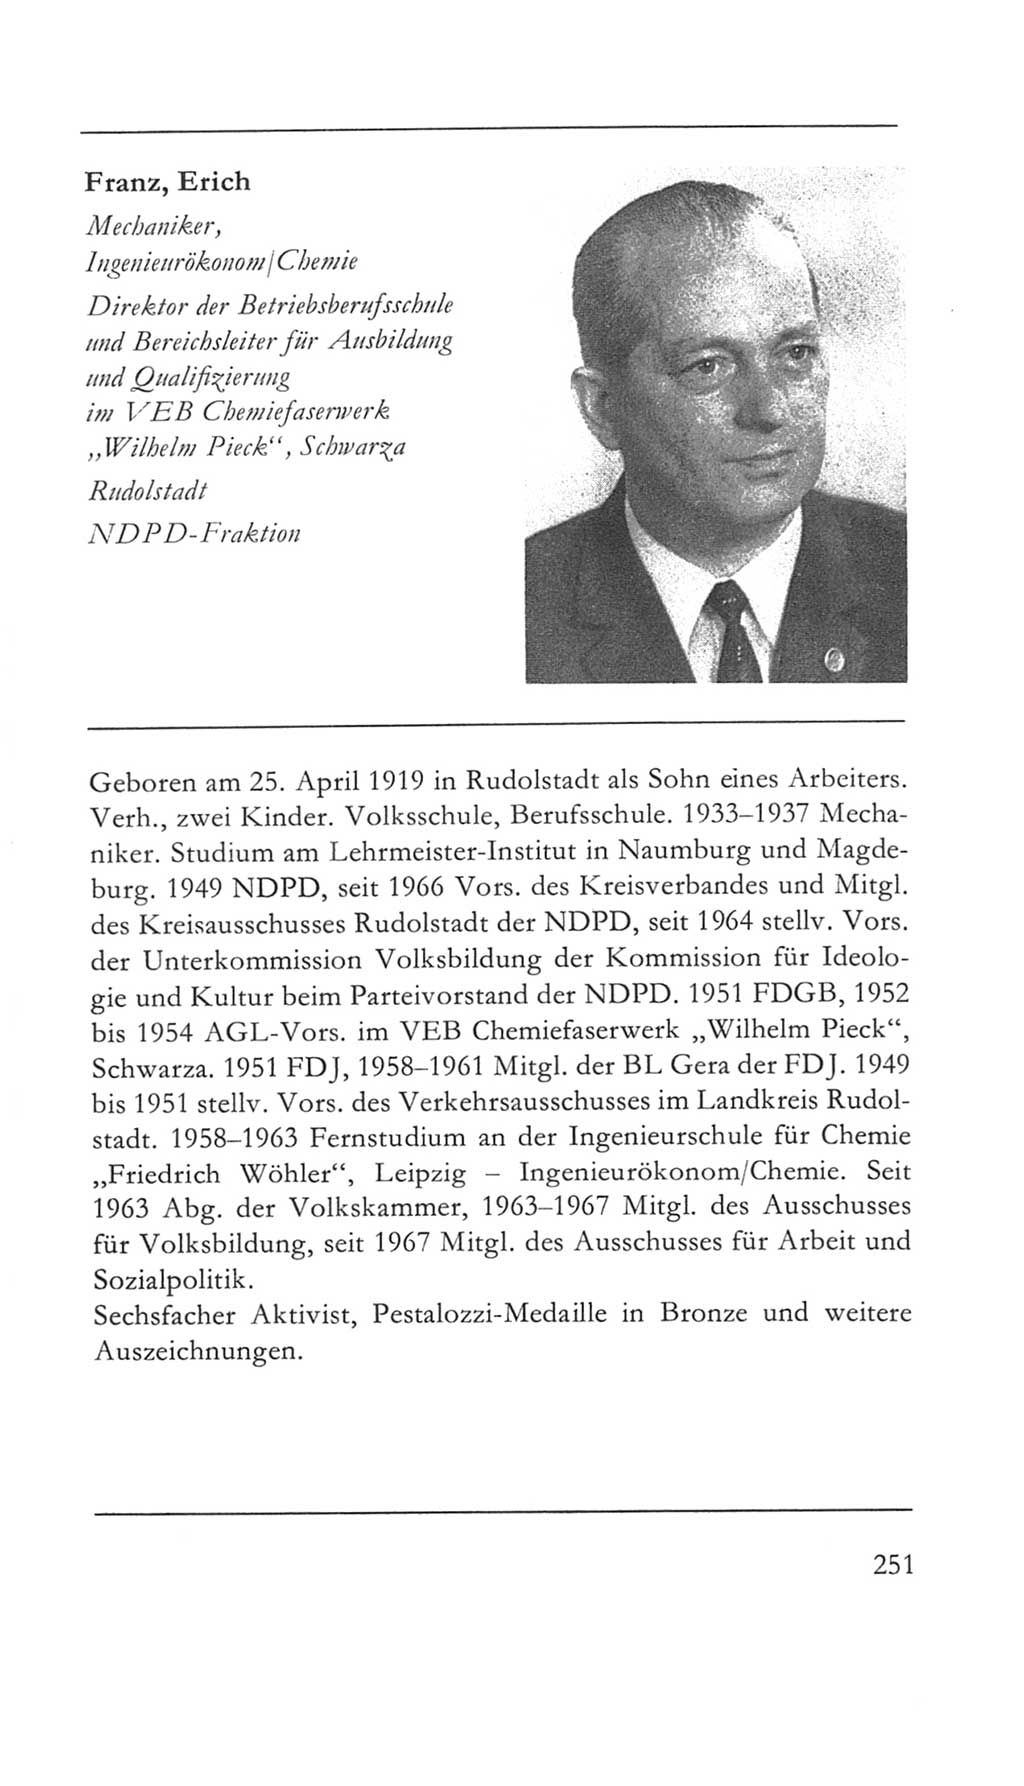 Volkskammer (VK) der Deutschen Demokratischen Republik (DDR) 5. Wahlperiode 1967-1971, Seite 251 (VK. DDR 5. WP. 1967-1971, S. 251)